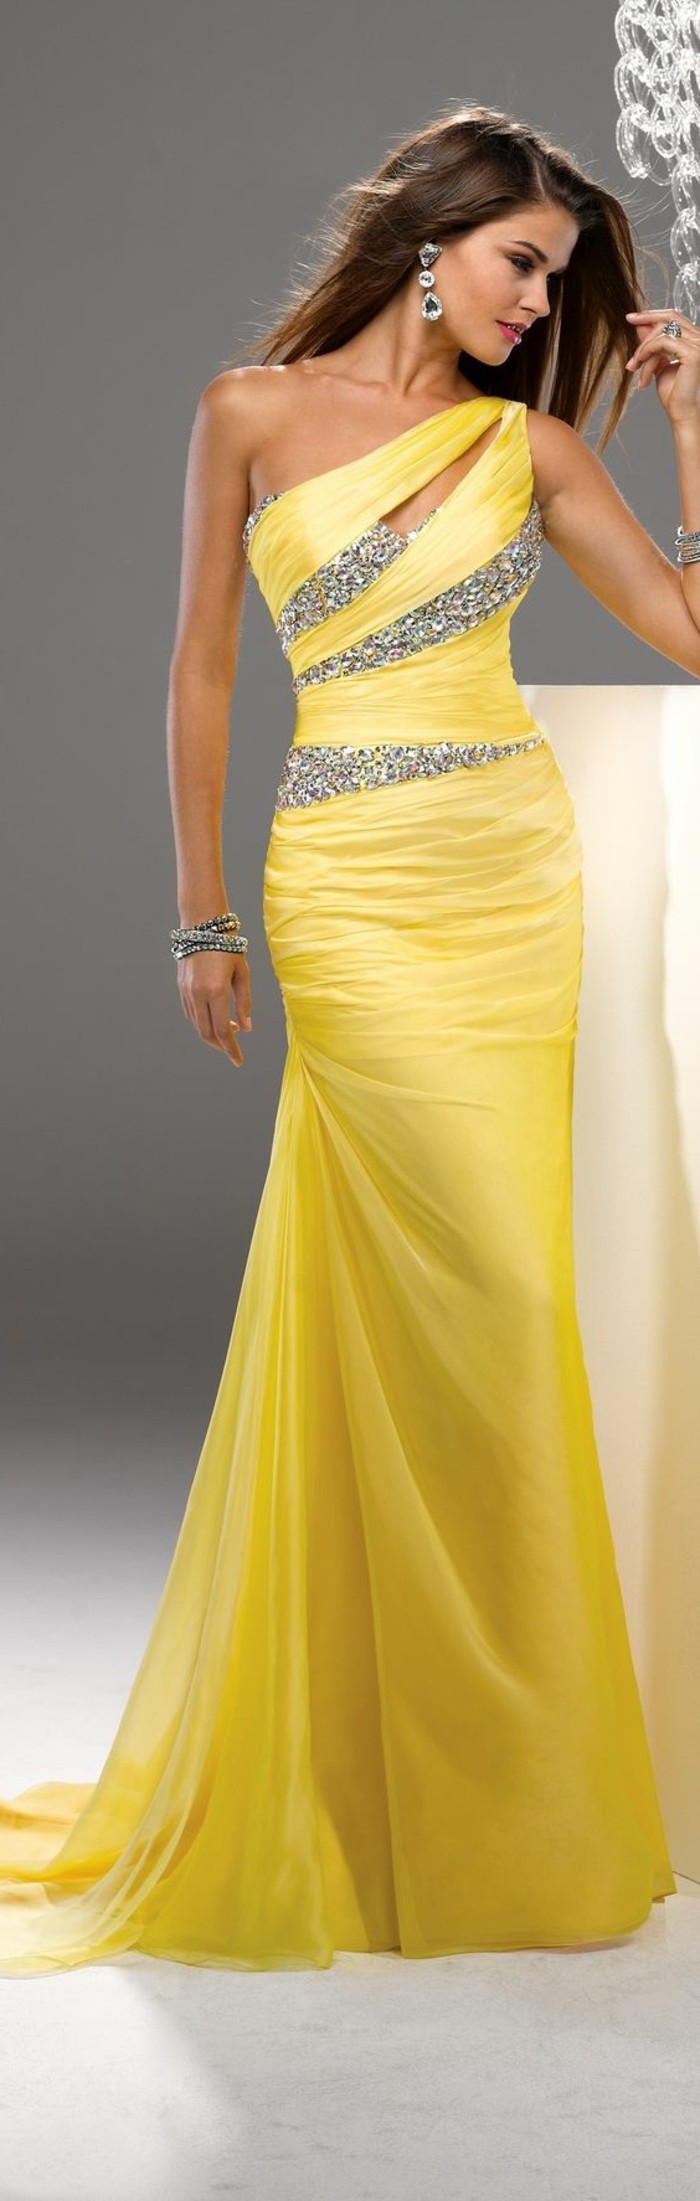 Elegante-Kleider-gelb-silber